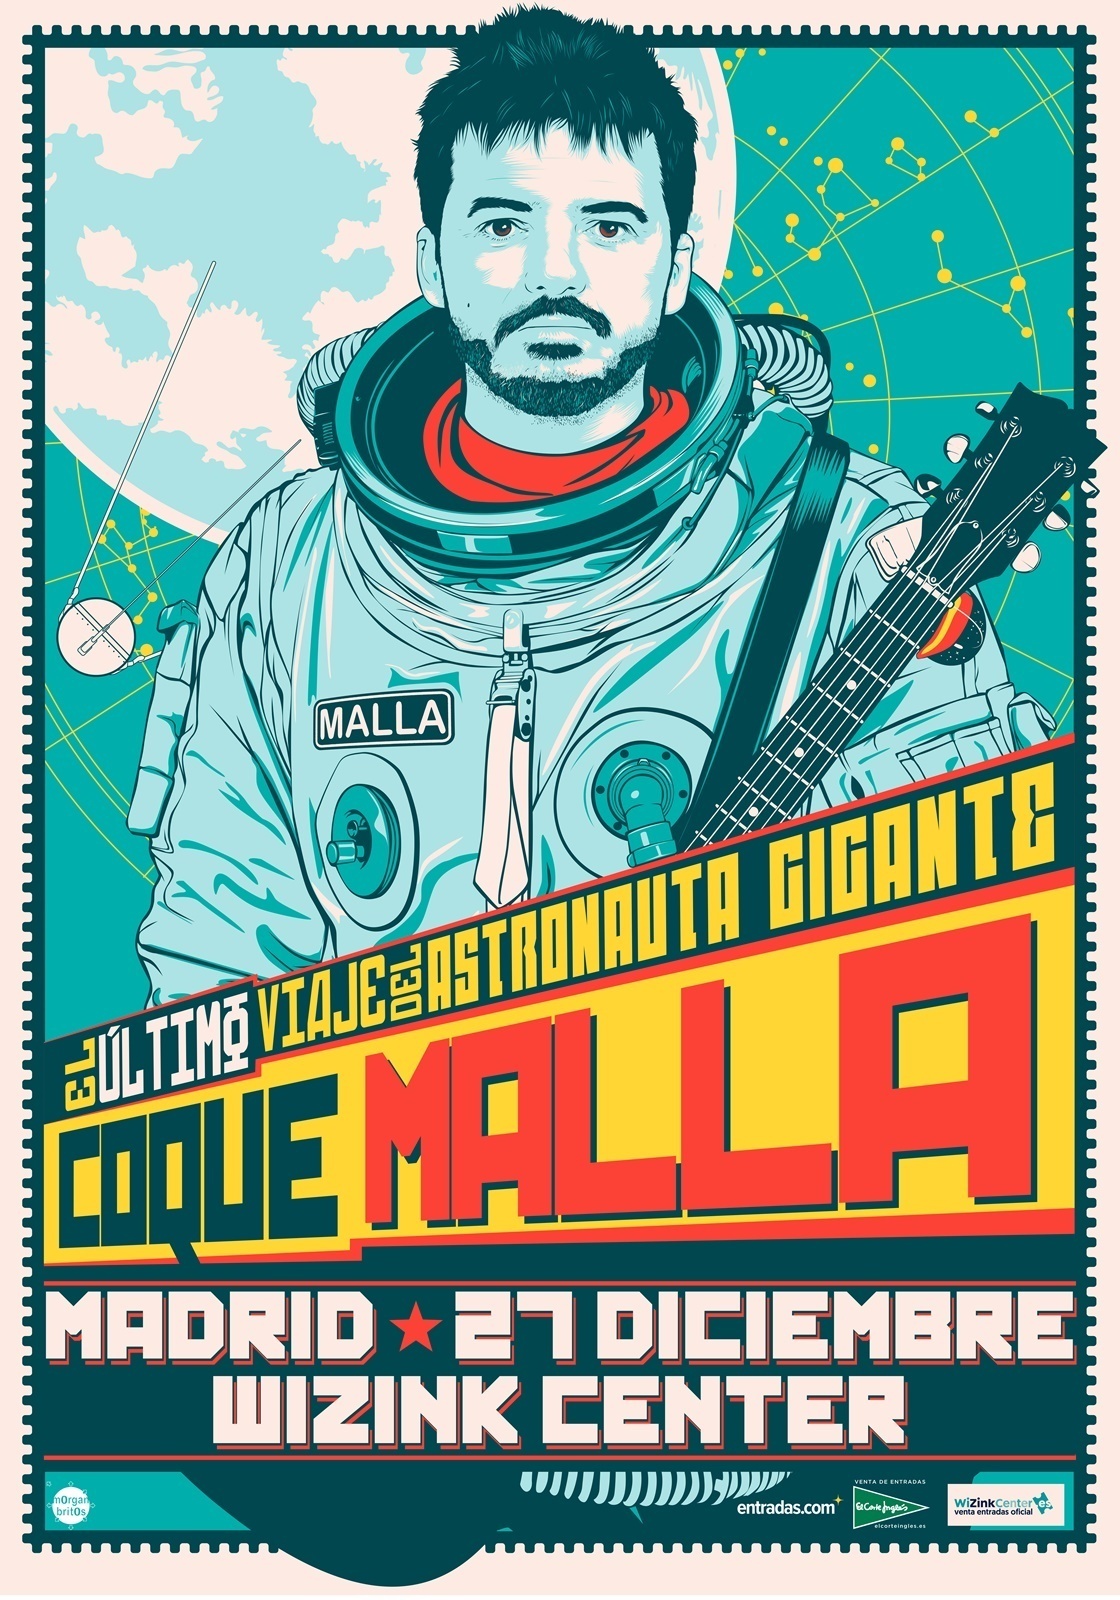 Coque Malla presenta su nueva gira, El viaje del astronauta gigante